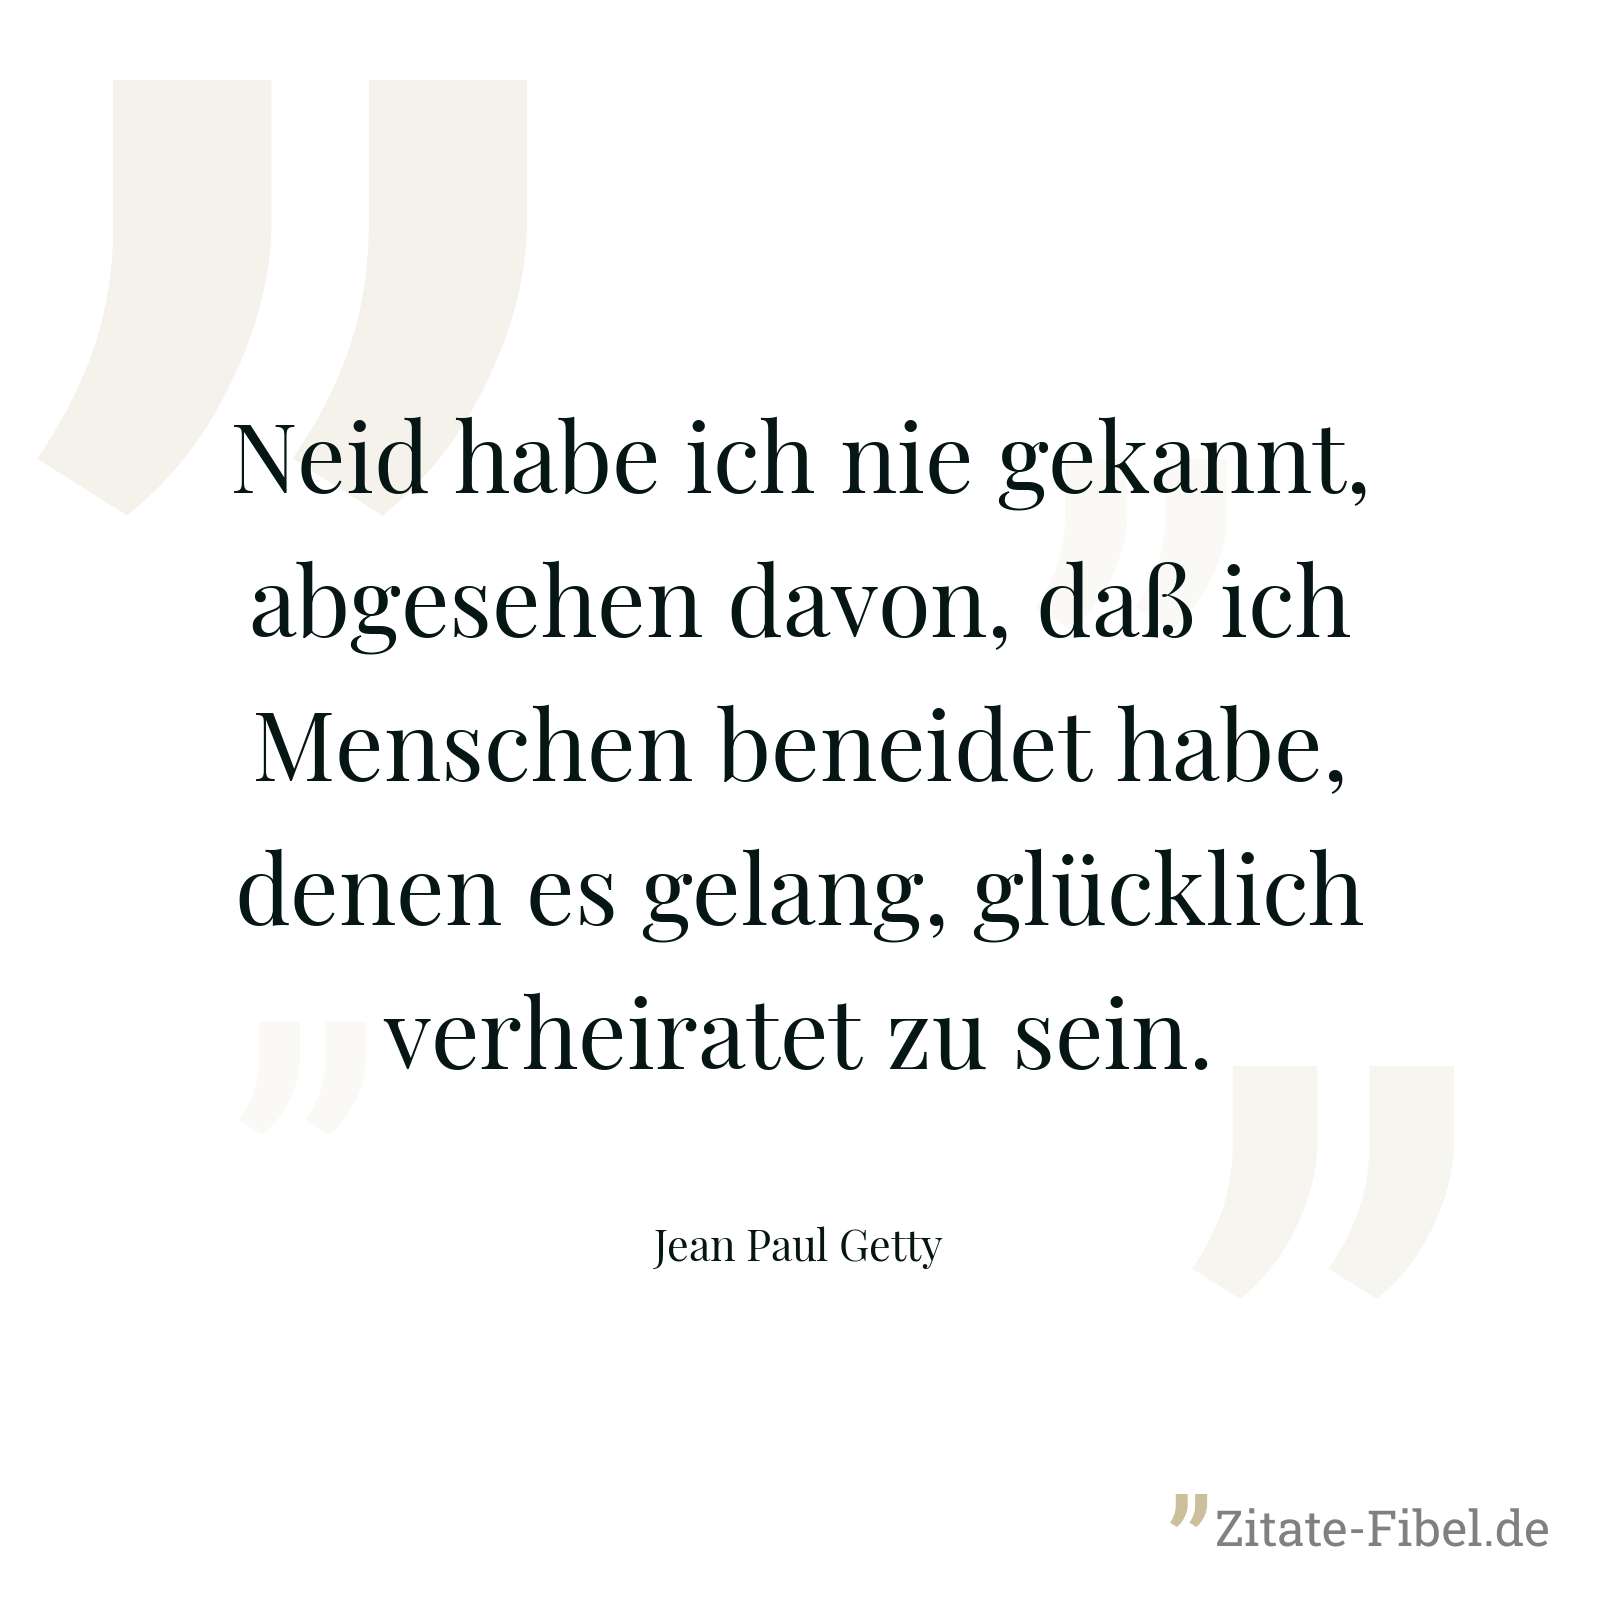 Neid habe ich nie gekannt, abgesehen davon, daß ich Menschen beneidet habe, denen es gelang, glücklich verheiratet zu sein. - Jean Paul Getty